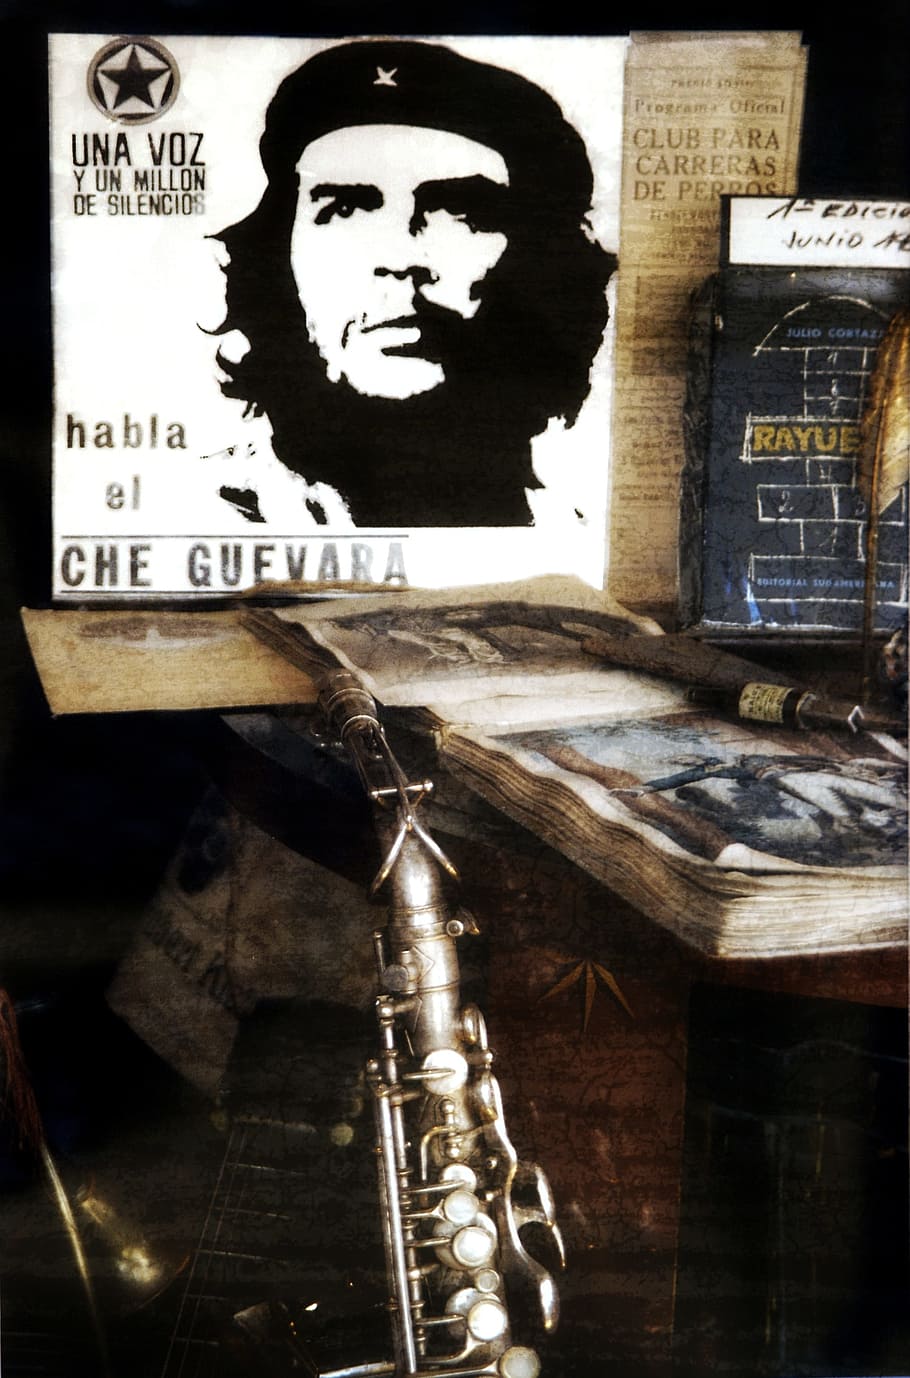 gray flute, Still Life, Che Guevara, Music, instrument, book